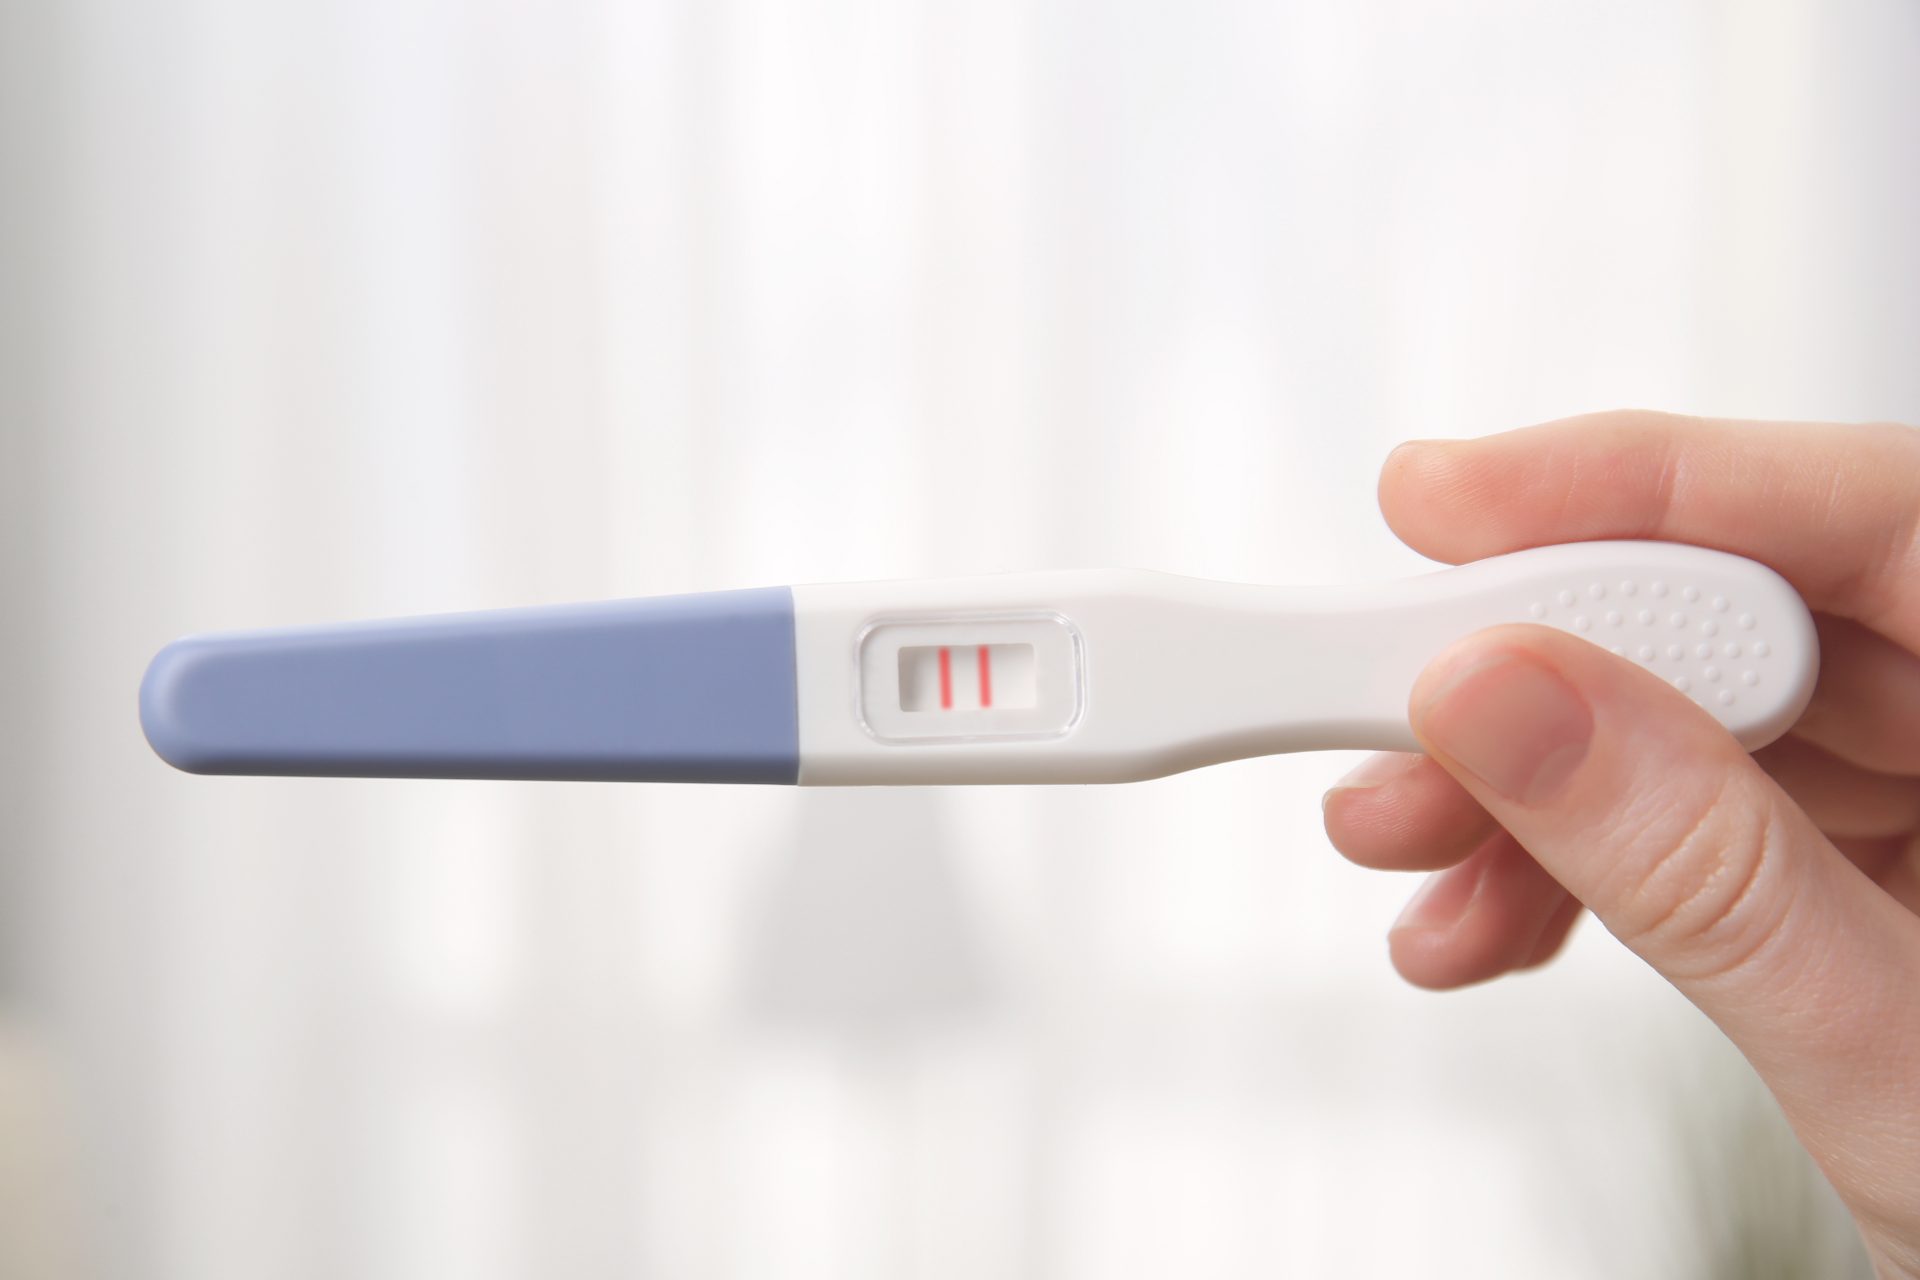 Teste de gravidez de farmácia é confiável? Confira a resposta!